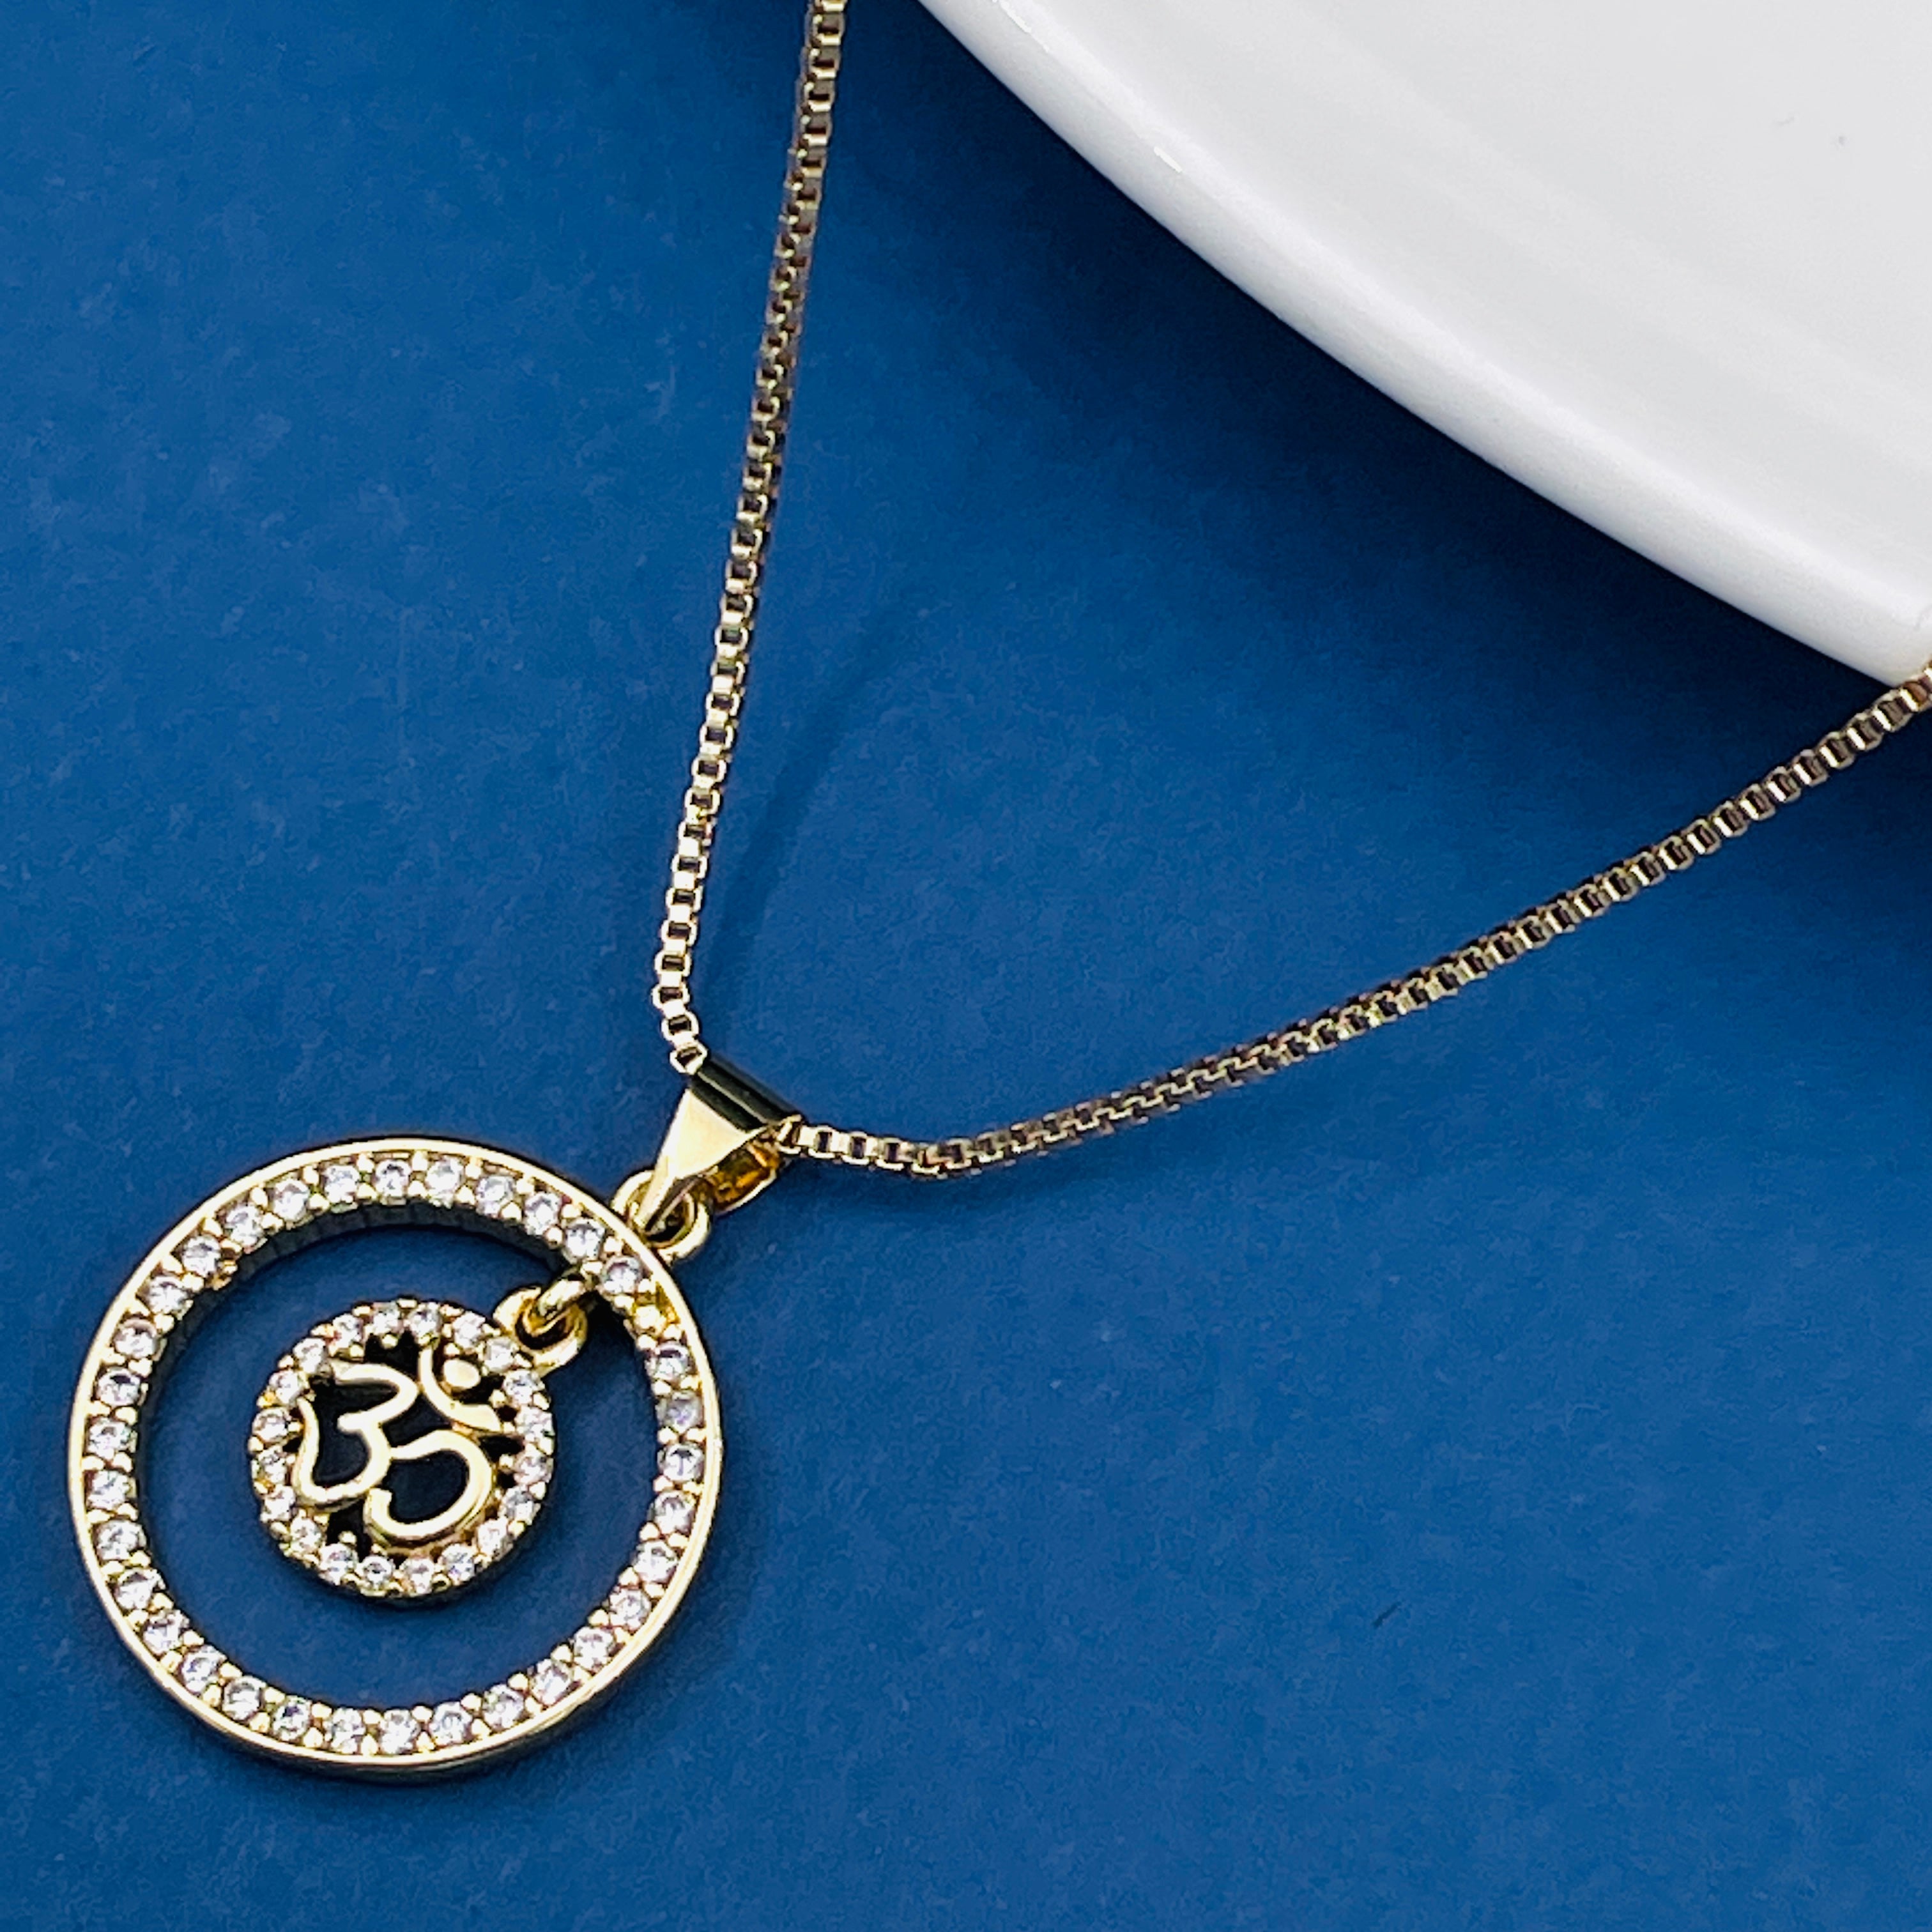 Aum Om Gold Copper American Diamond Pendant Chain For Women